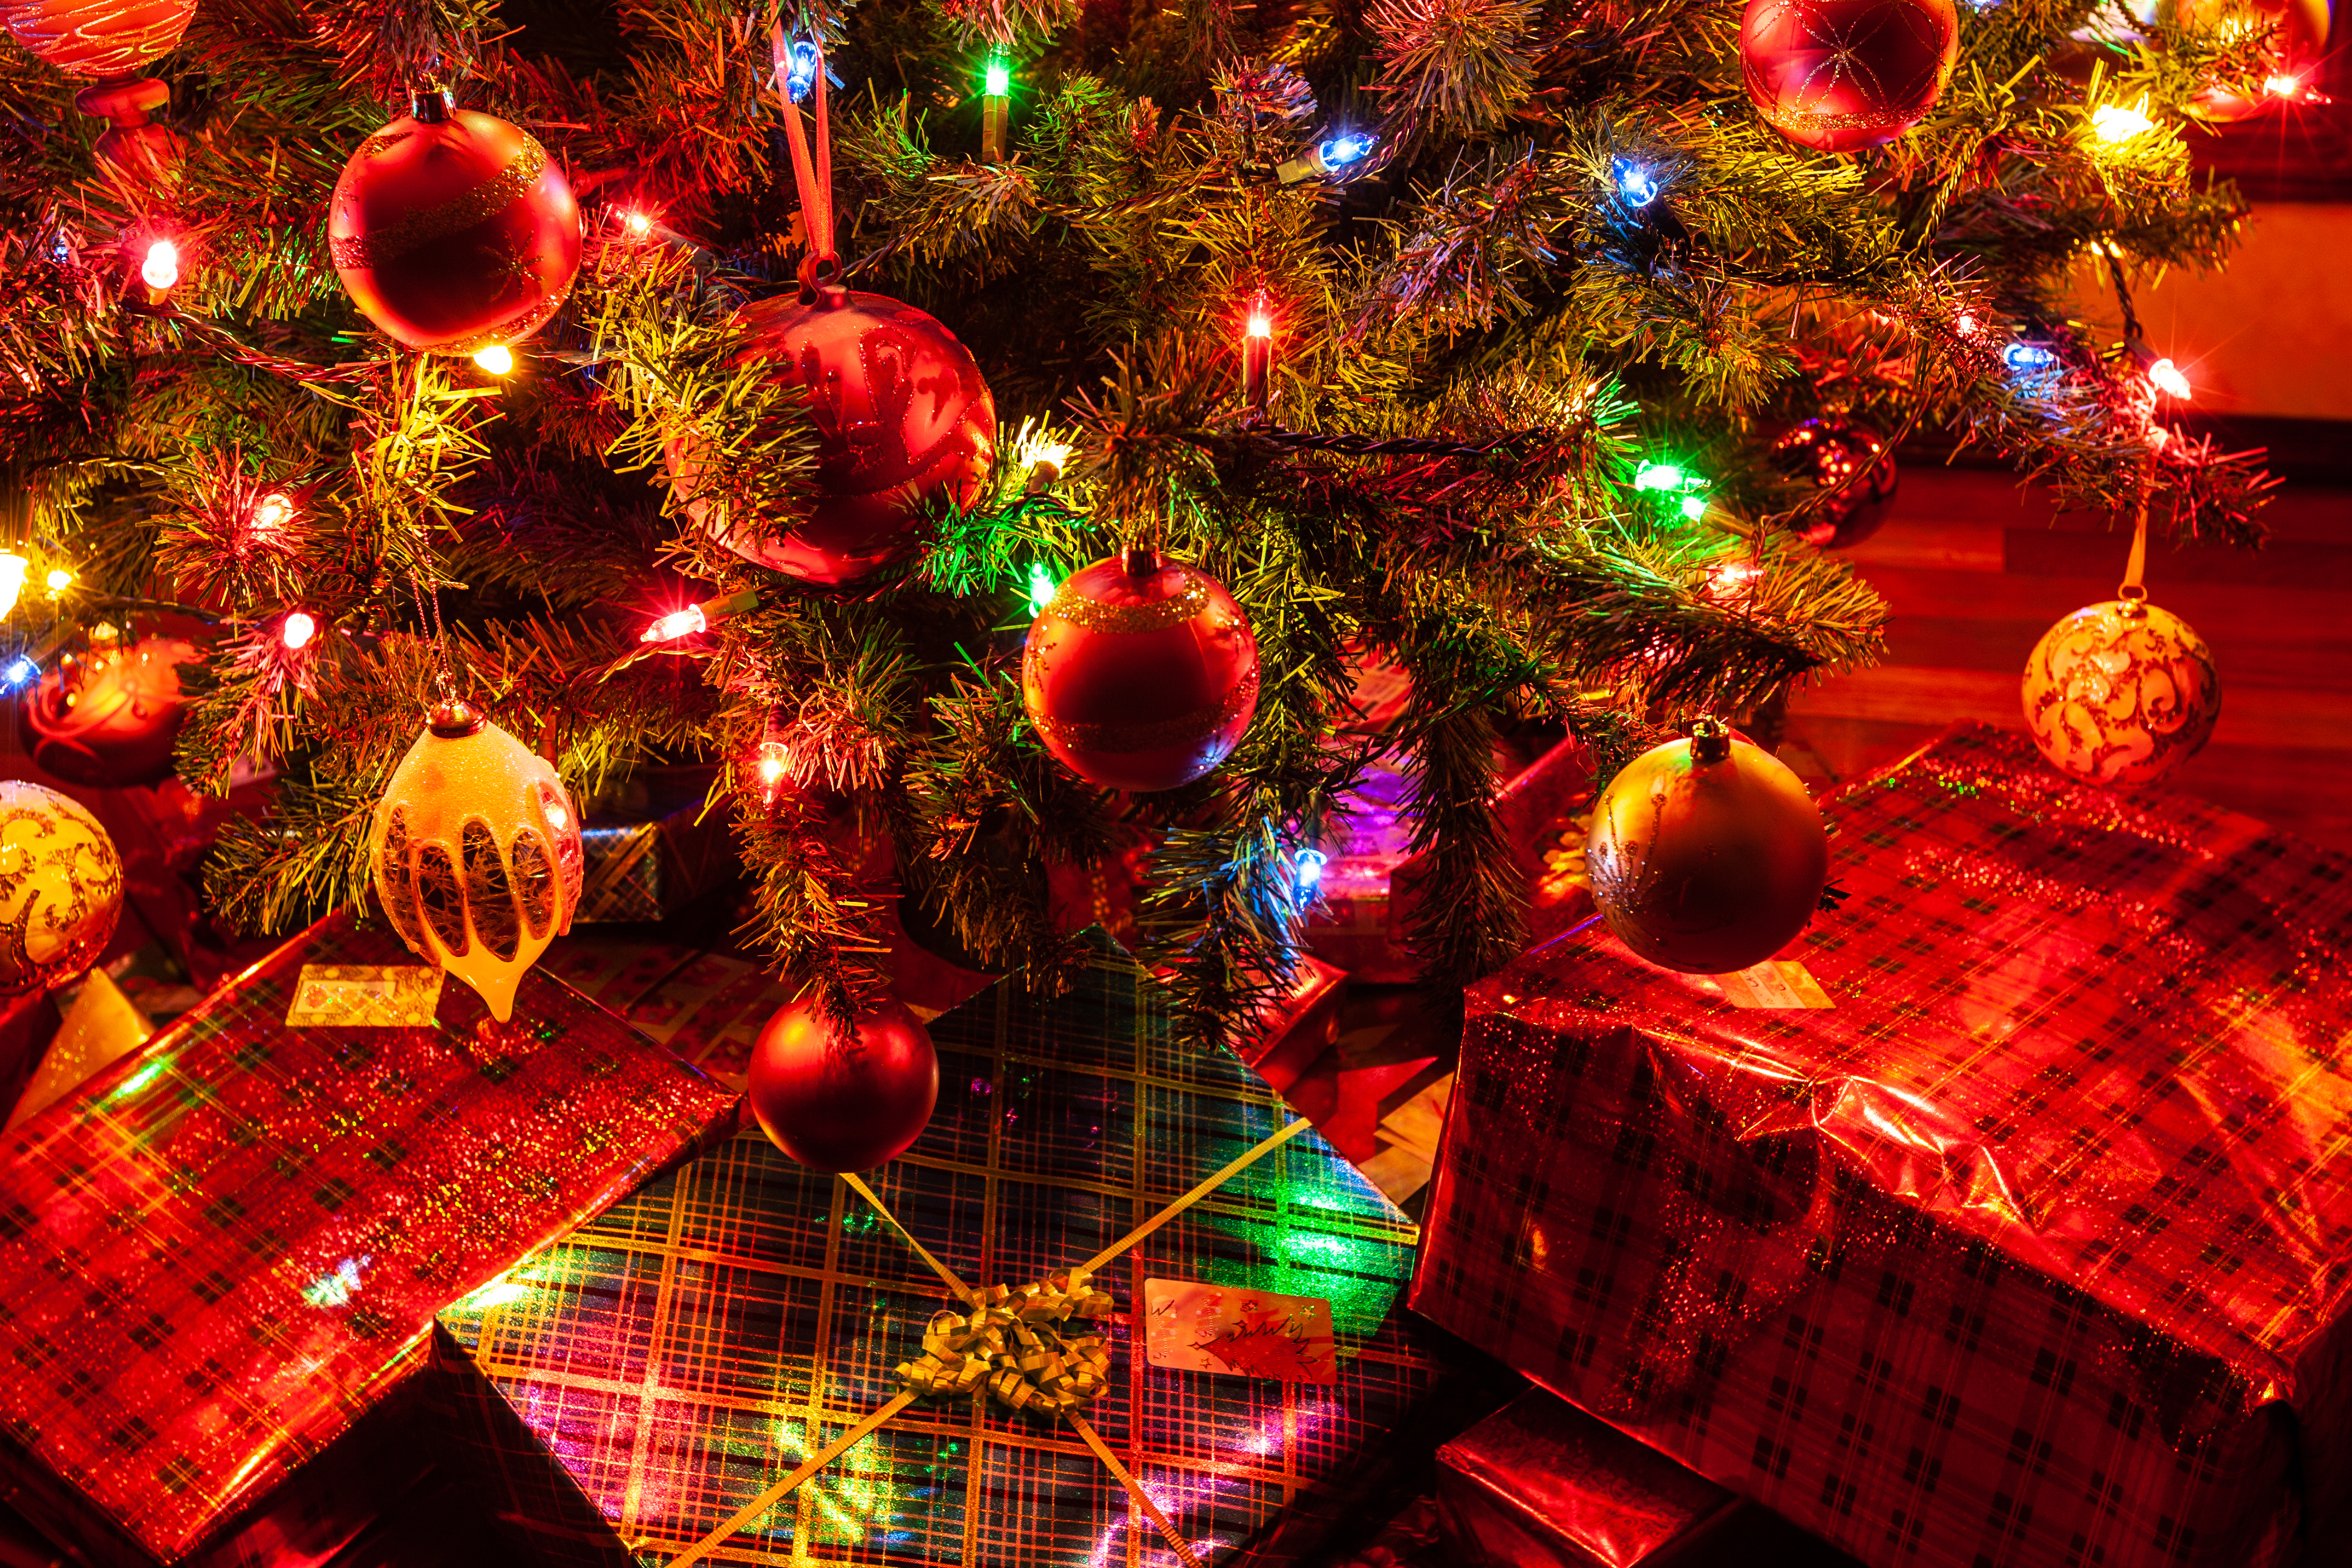 Cây thông Noel và quà tặng: Tận hưởng khung cảnh ngập tràn màu xanh cây thông cùng loạt quà tặng hấp dẫn đang chờ đón bạn! Hãy đến xưởng sản xuất ông già Noel để tham quan, tặng quà và chụp ảnh một mùa Giáng sinh đáng nhớ. Để đặc biệt, bạn còn có thể tận hưởng pháo hoa lung linh vào buổi tối!